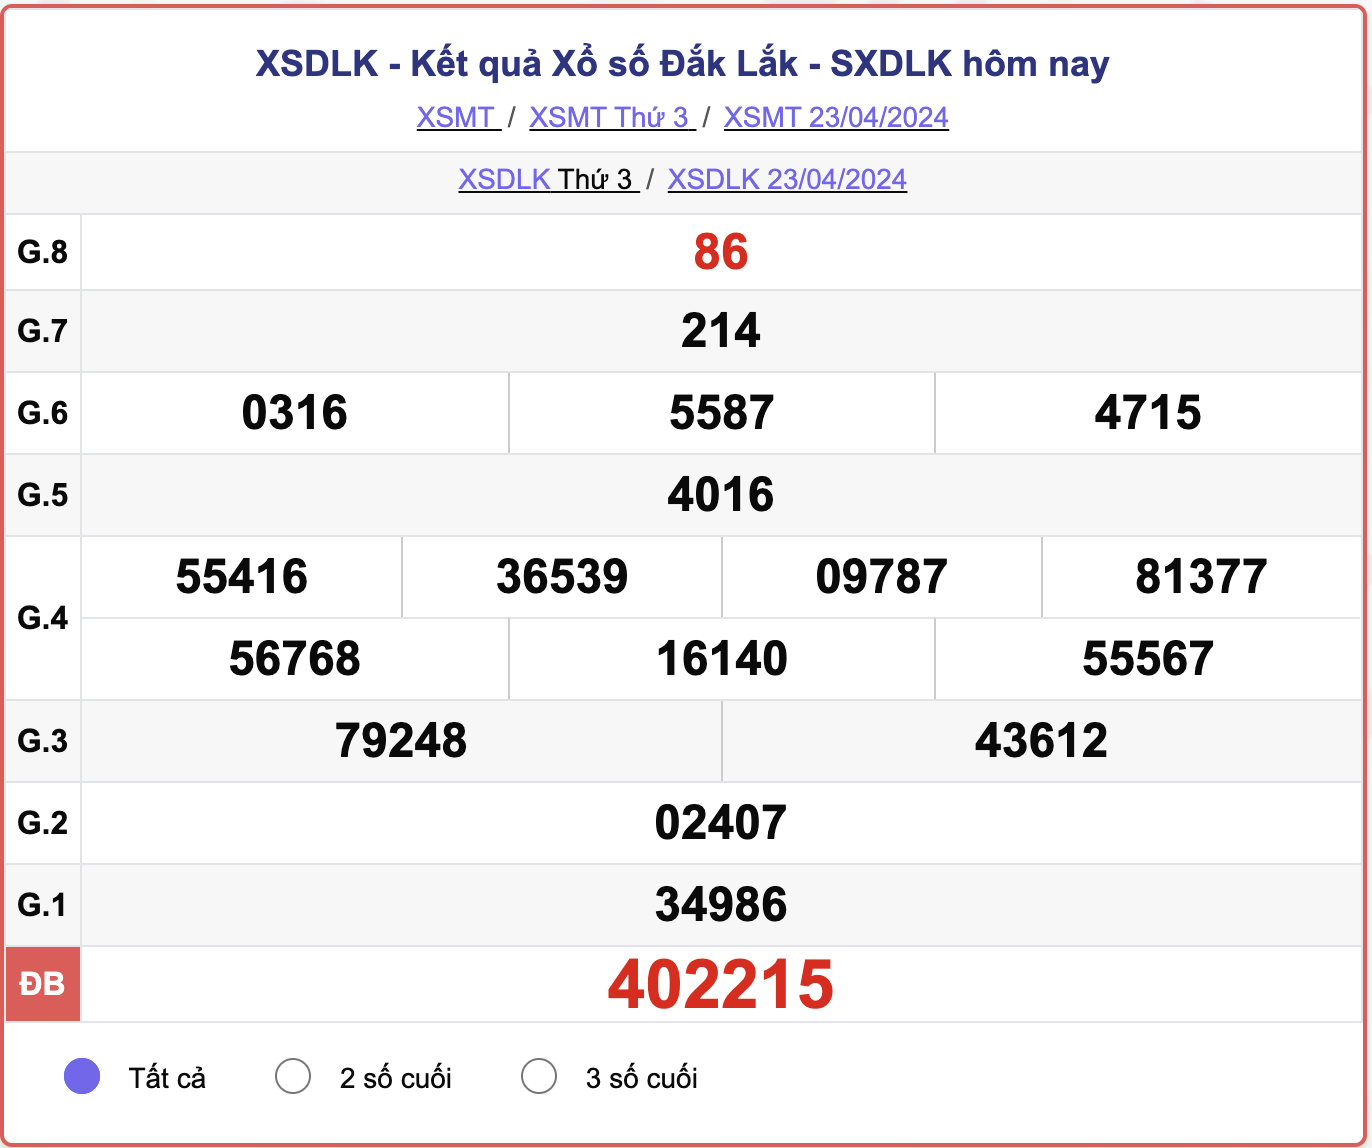 XSDLK thứ 3, kết quả xổ số Đắk Lắk ngày 23/4/2024.